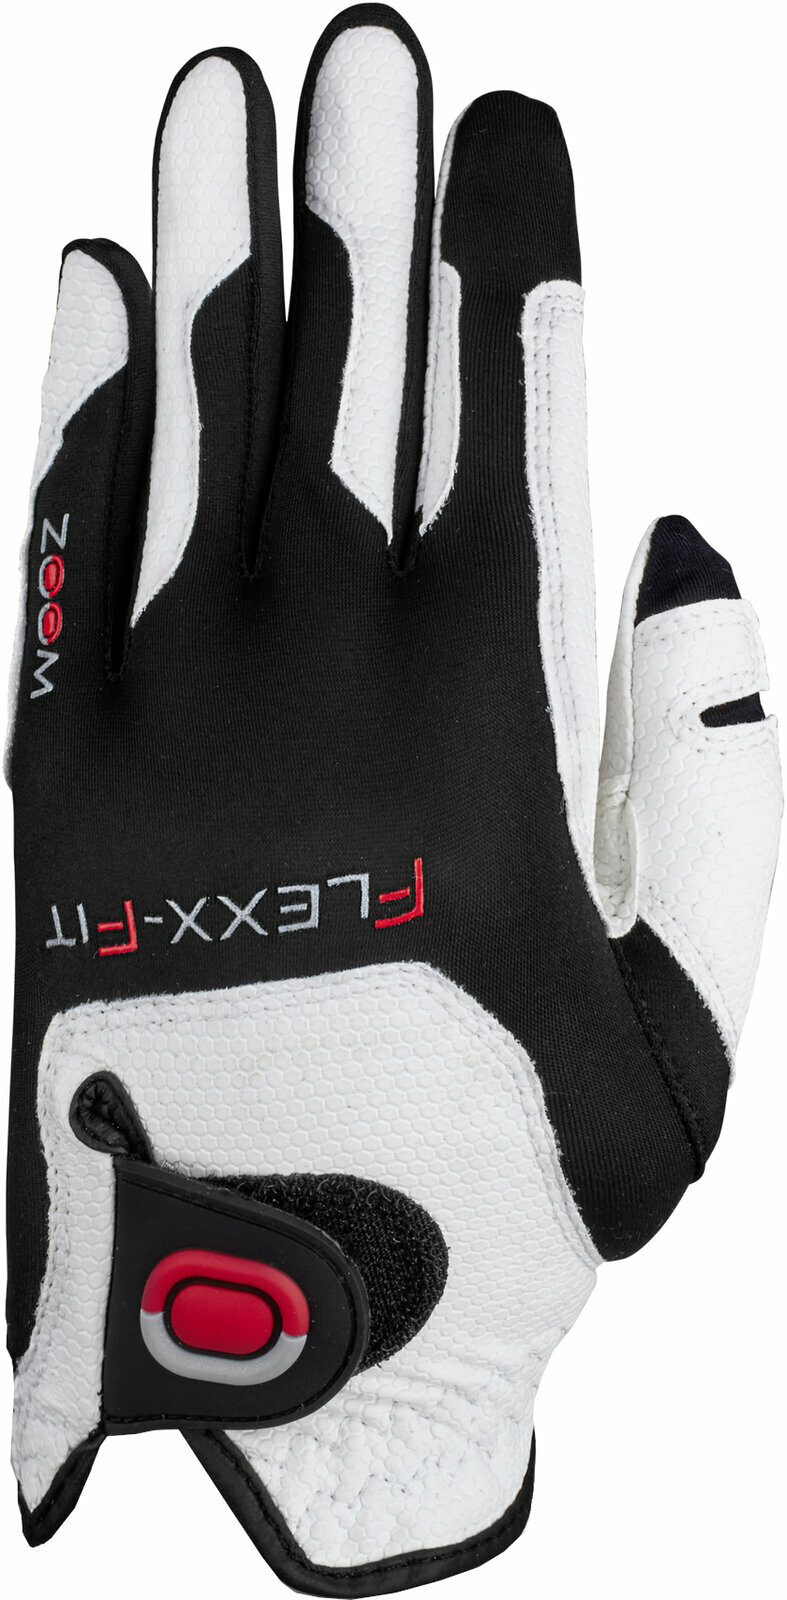 Gloves Zoom Gloves Weather Junior Golf Glove White/Black/Red RH